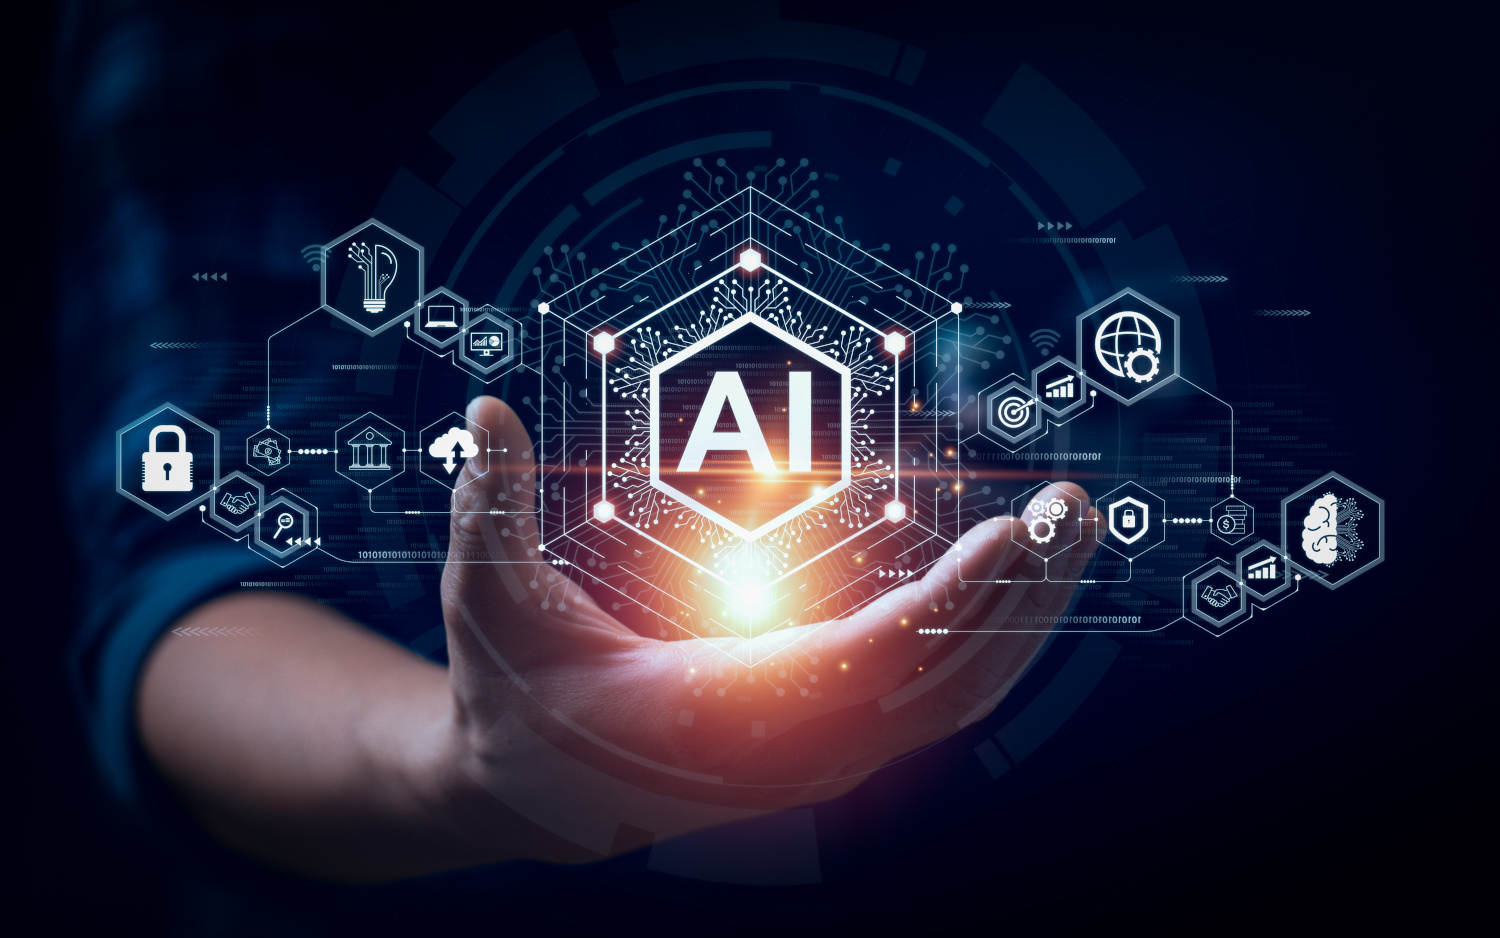 Qlik presenta l'AI Council per accelerare l'adozione dell'AI in modo responsabile da parte delle aziende